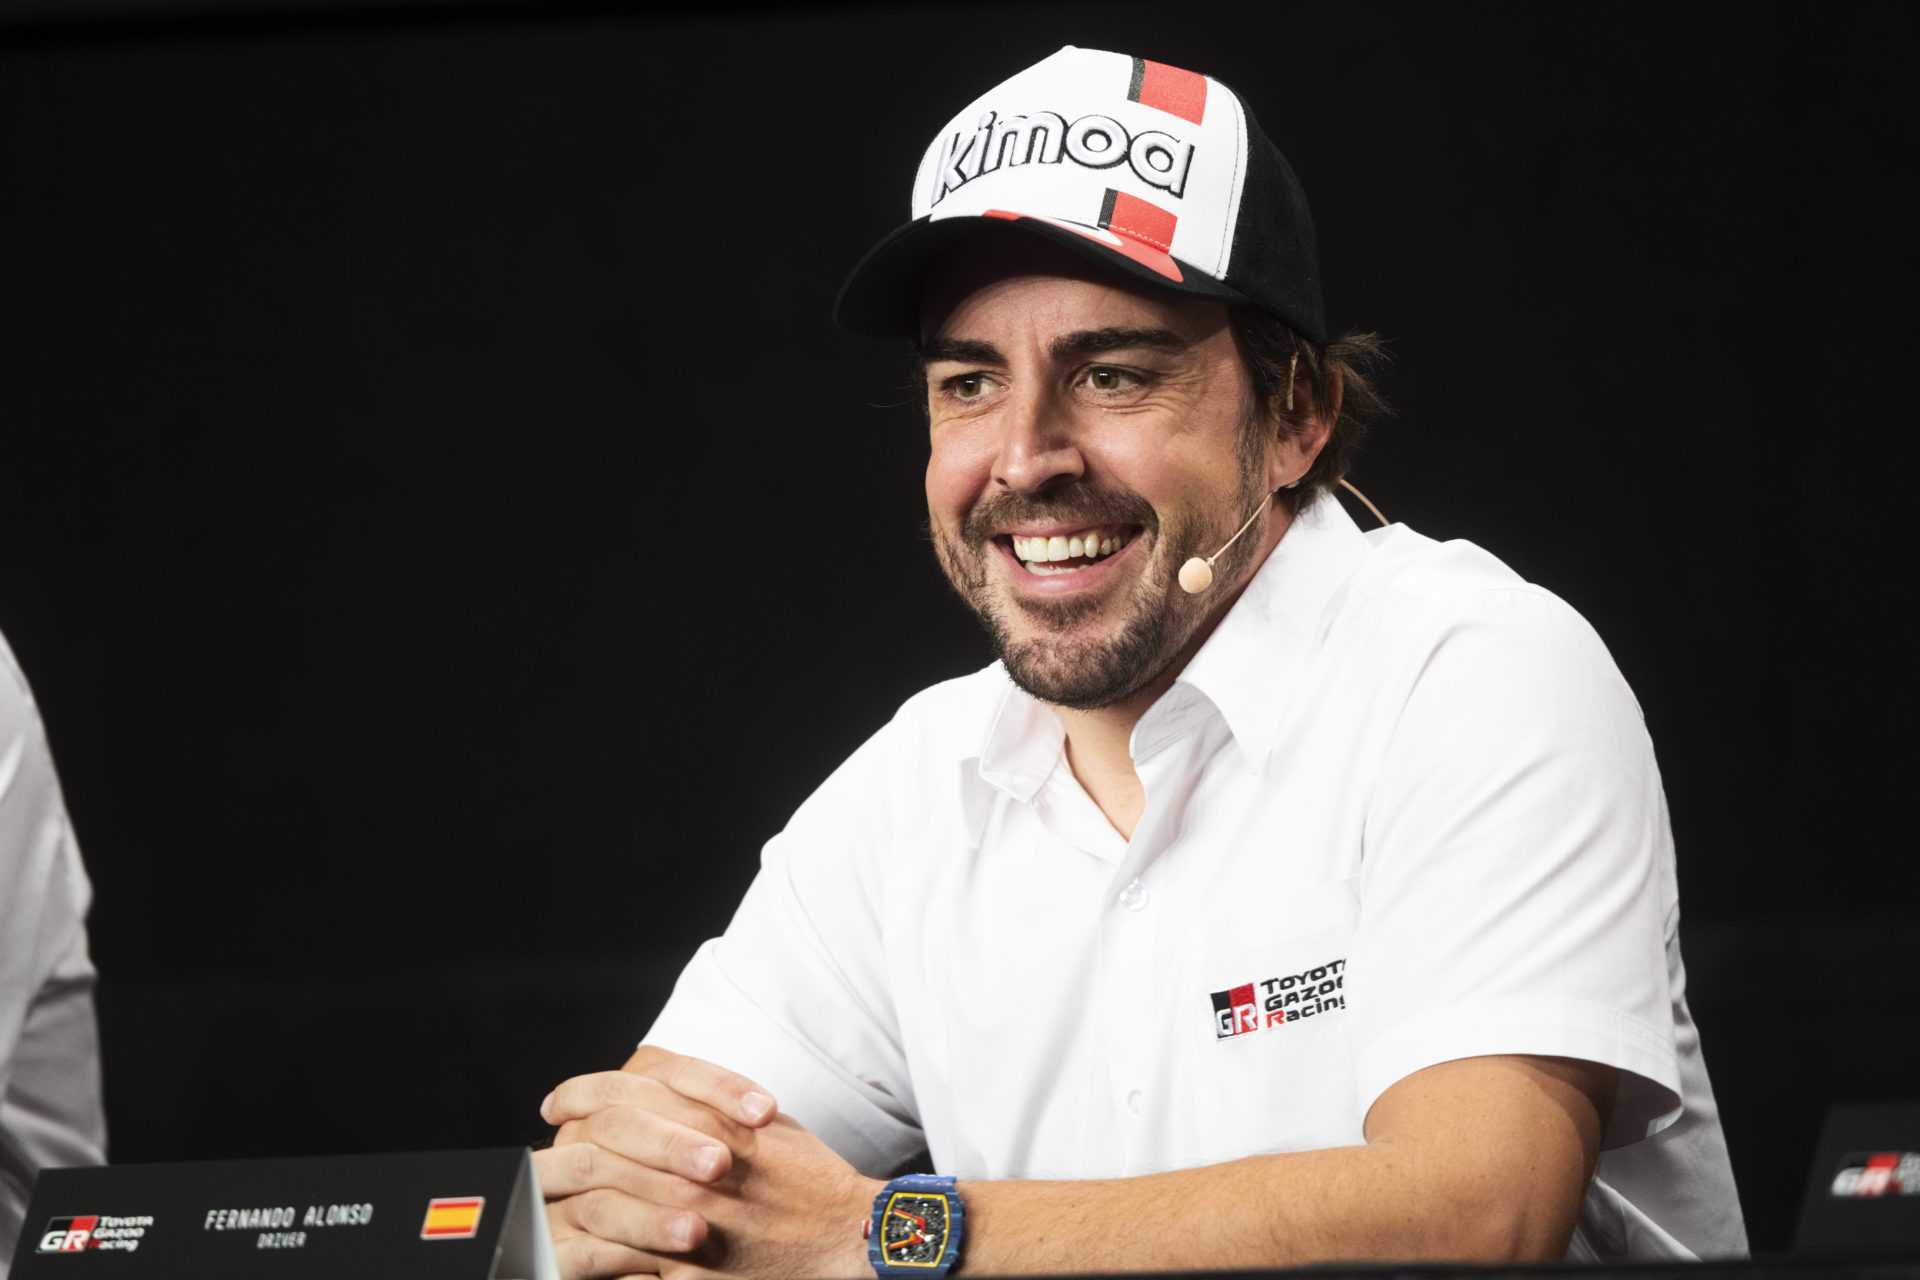 Fernando Alonso prépare l'arrivée de Renault en P3 en 2020